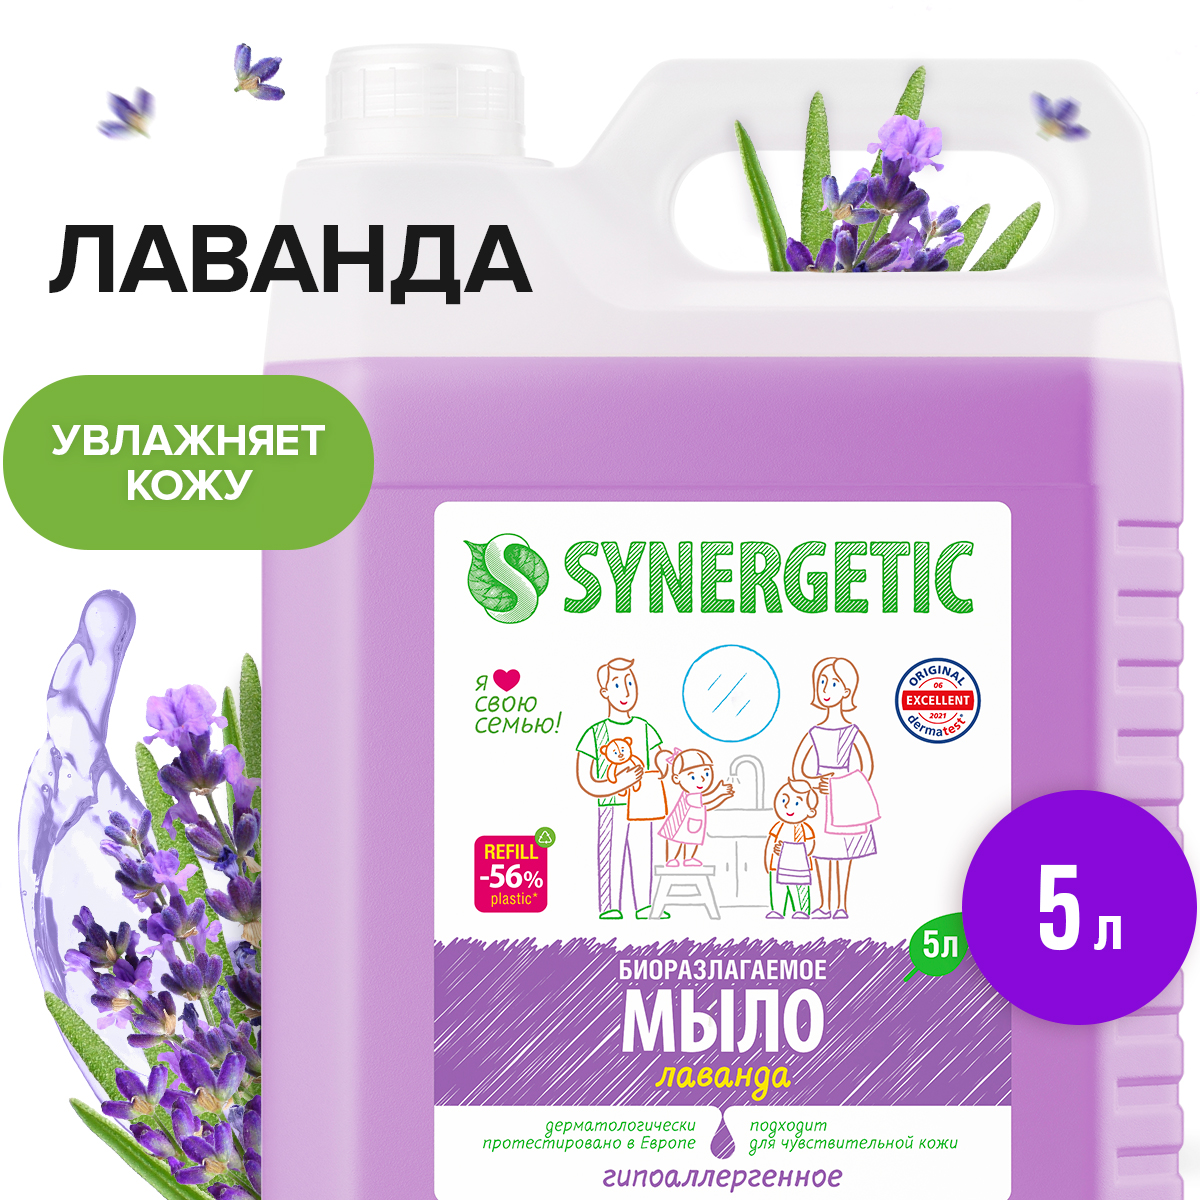 Мыло жидкое Synergetic Лаванда гипоаллергенное, с эффектом увлажнения 5 л - купить в Мегамаркет Москва Пушкино, цена на Мегамаркет